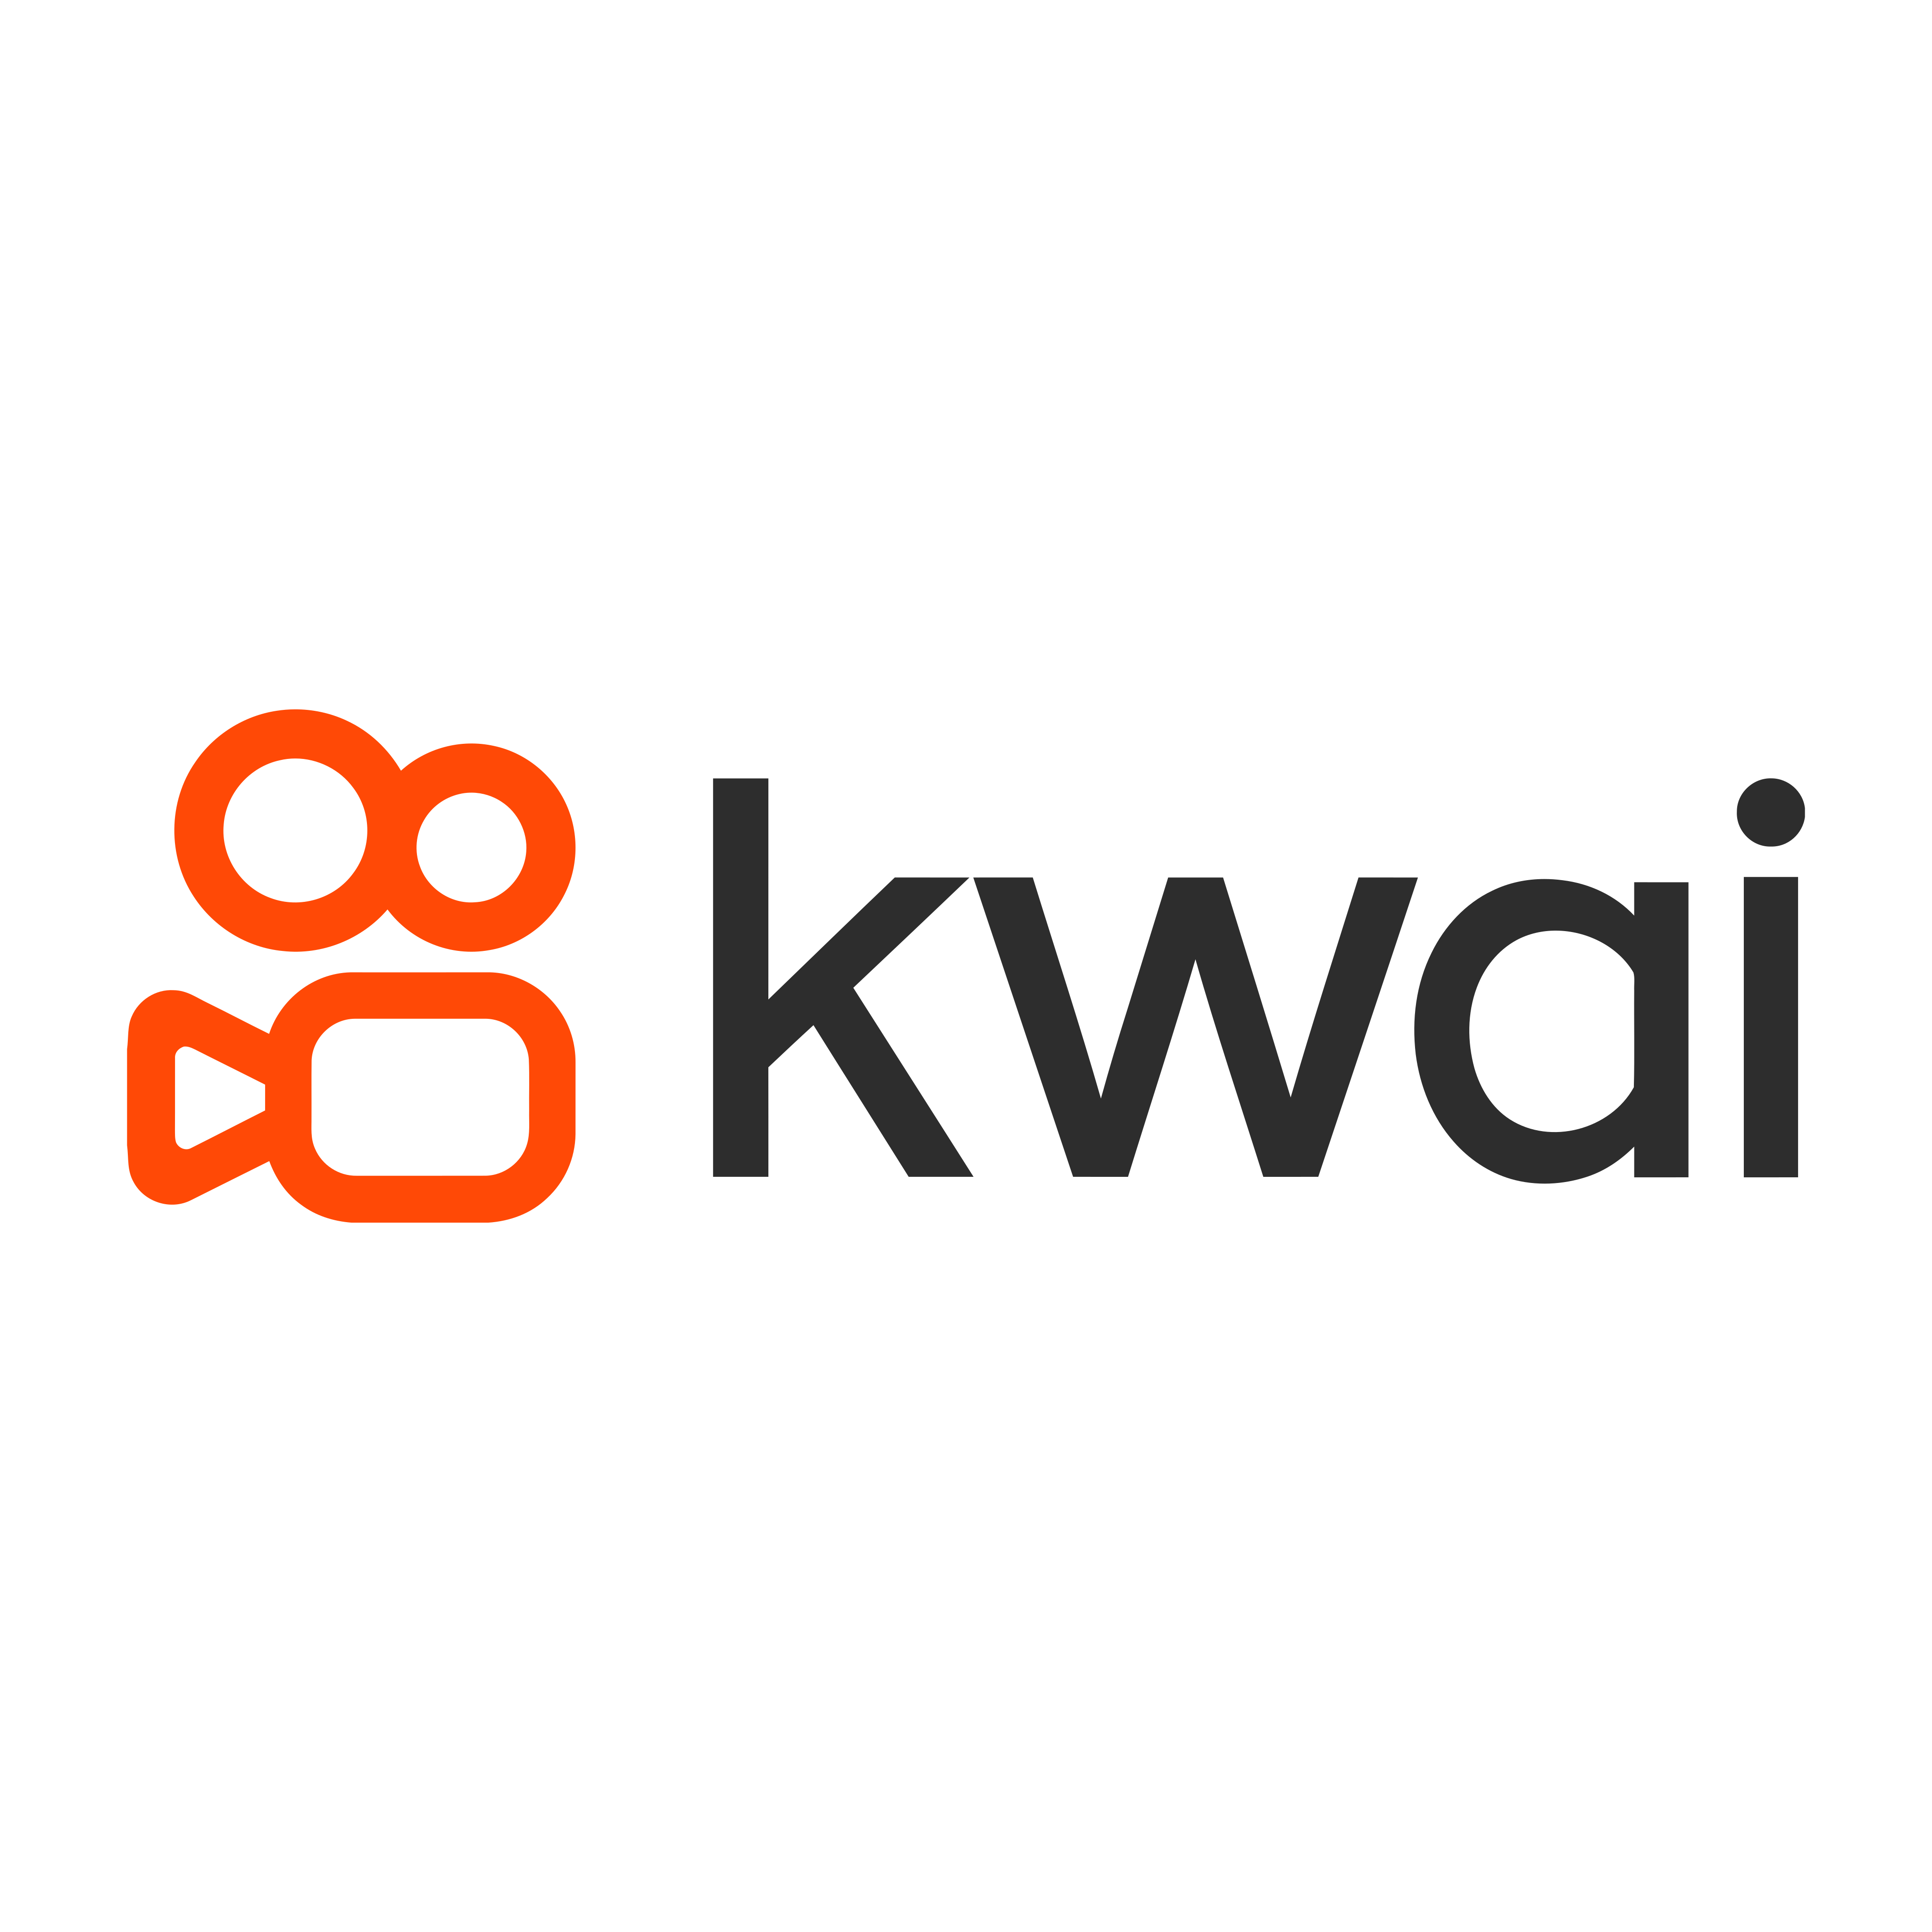 kwai logo 0 1 - Kwai Logo